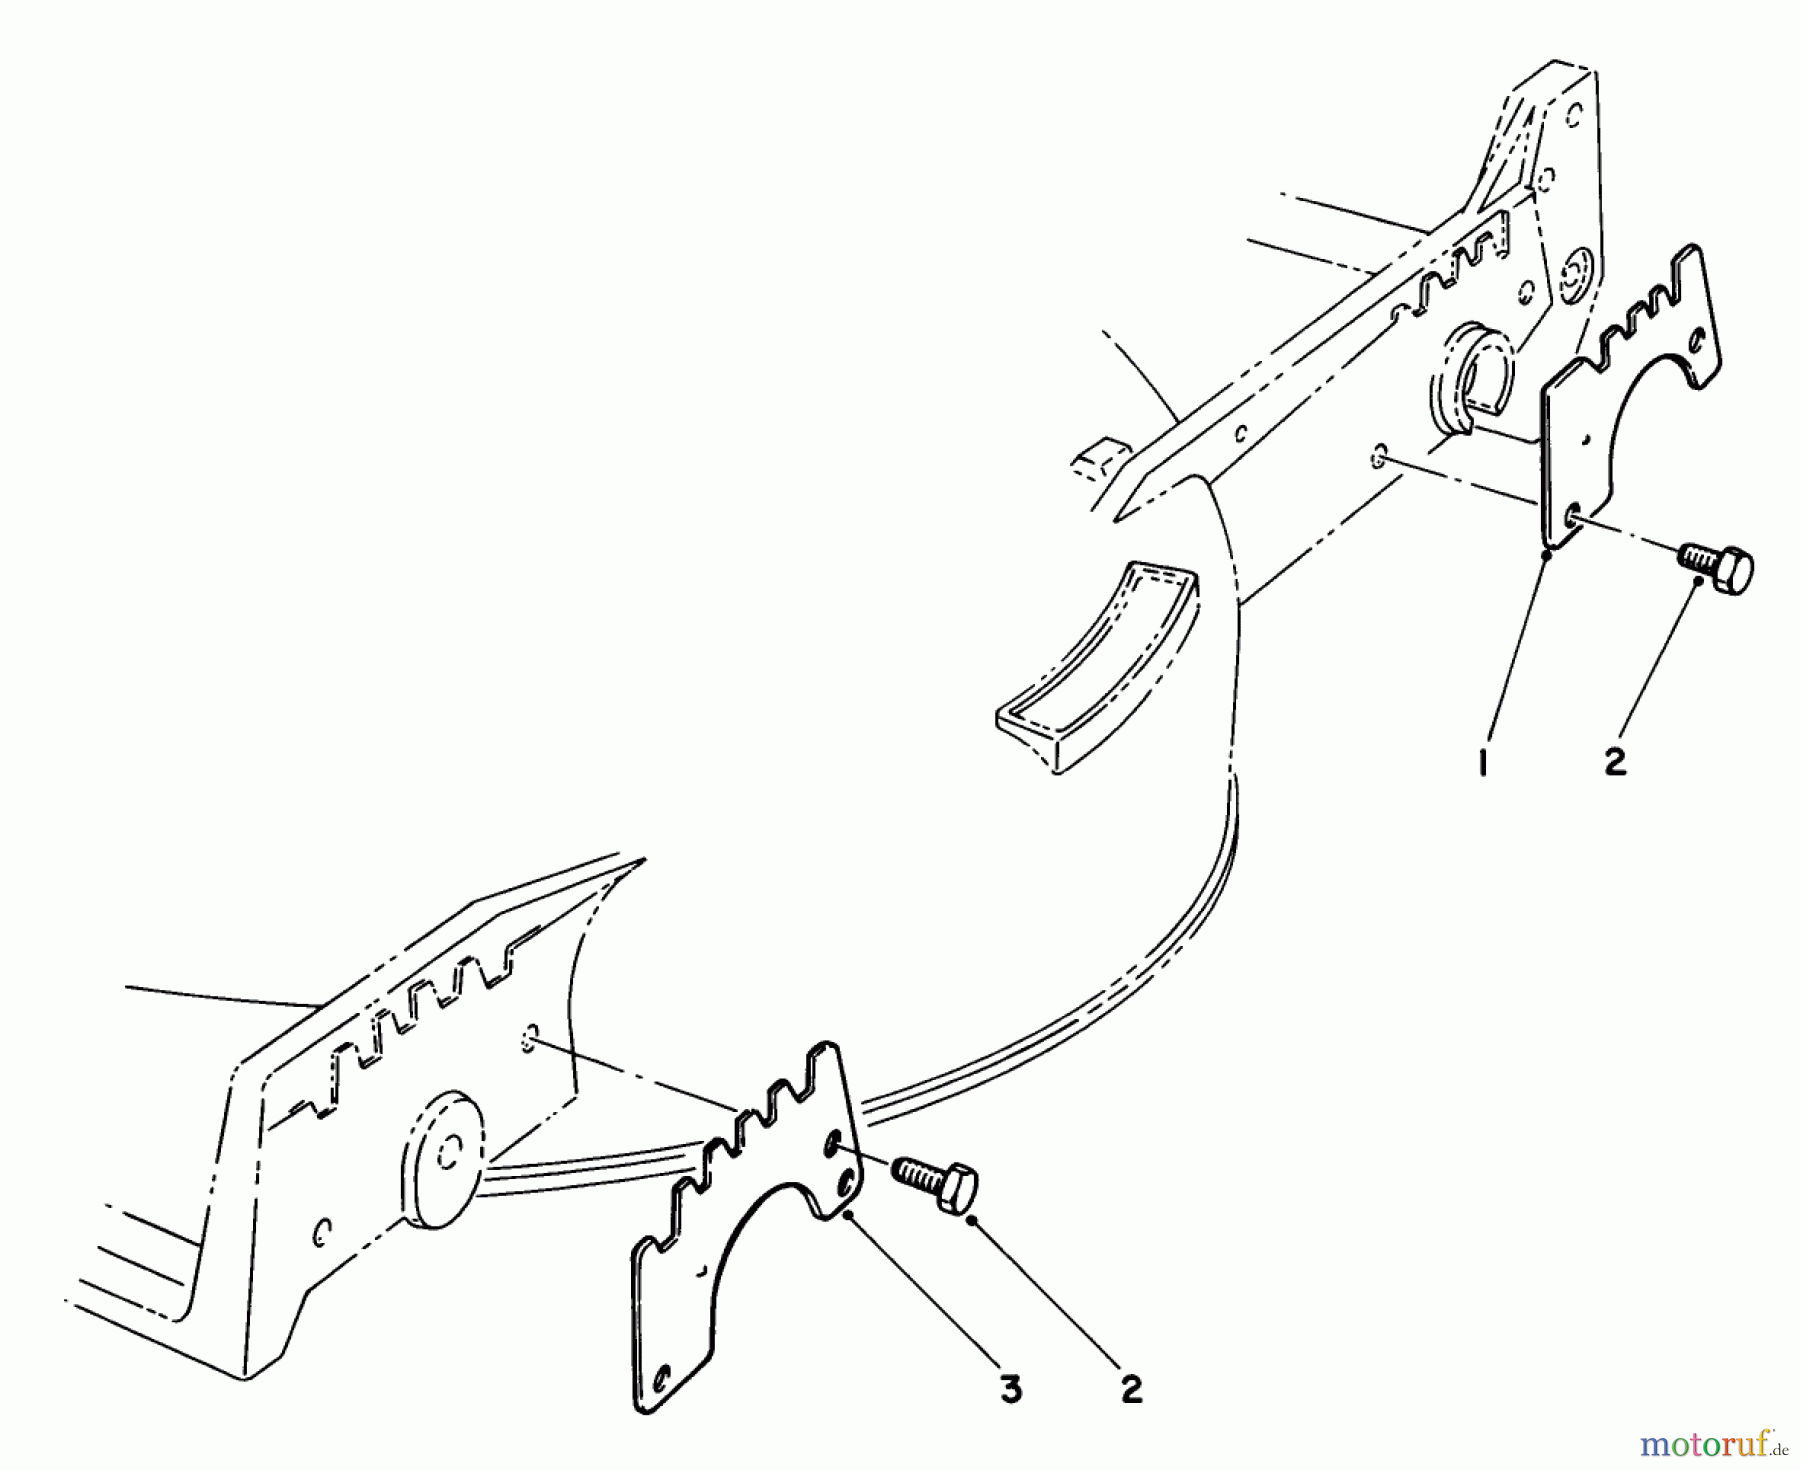  Toro Neu Mowers, Walk-Behind Seite 1 20747 - Toro Lawnmower, 1985 (5000001-5999999) WEAR PLATE KIT NO. 49-4080 (OPTIONAL)